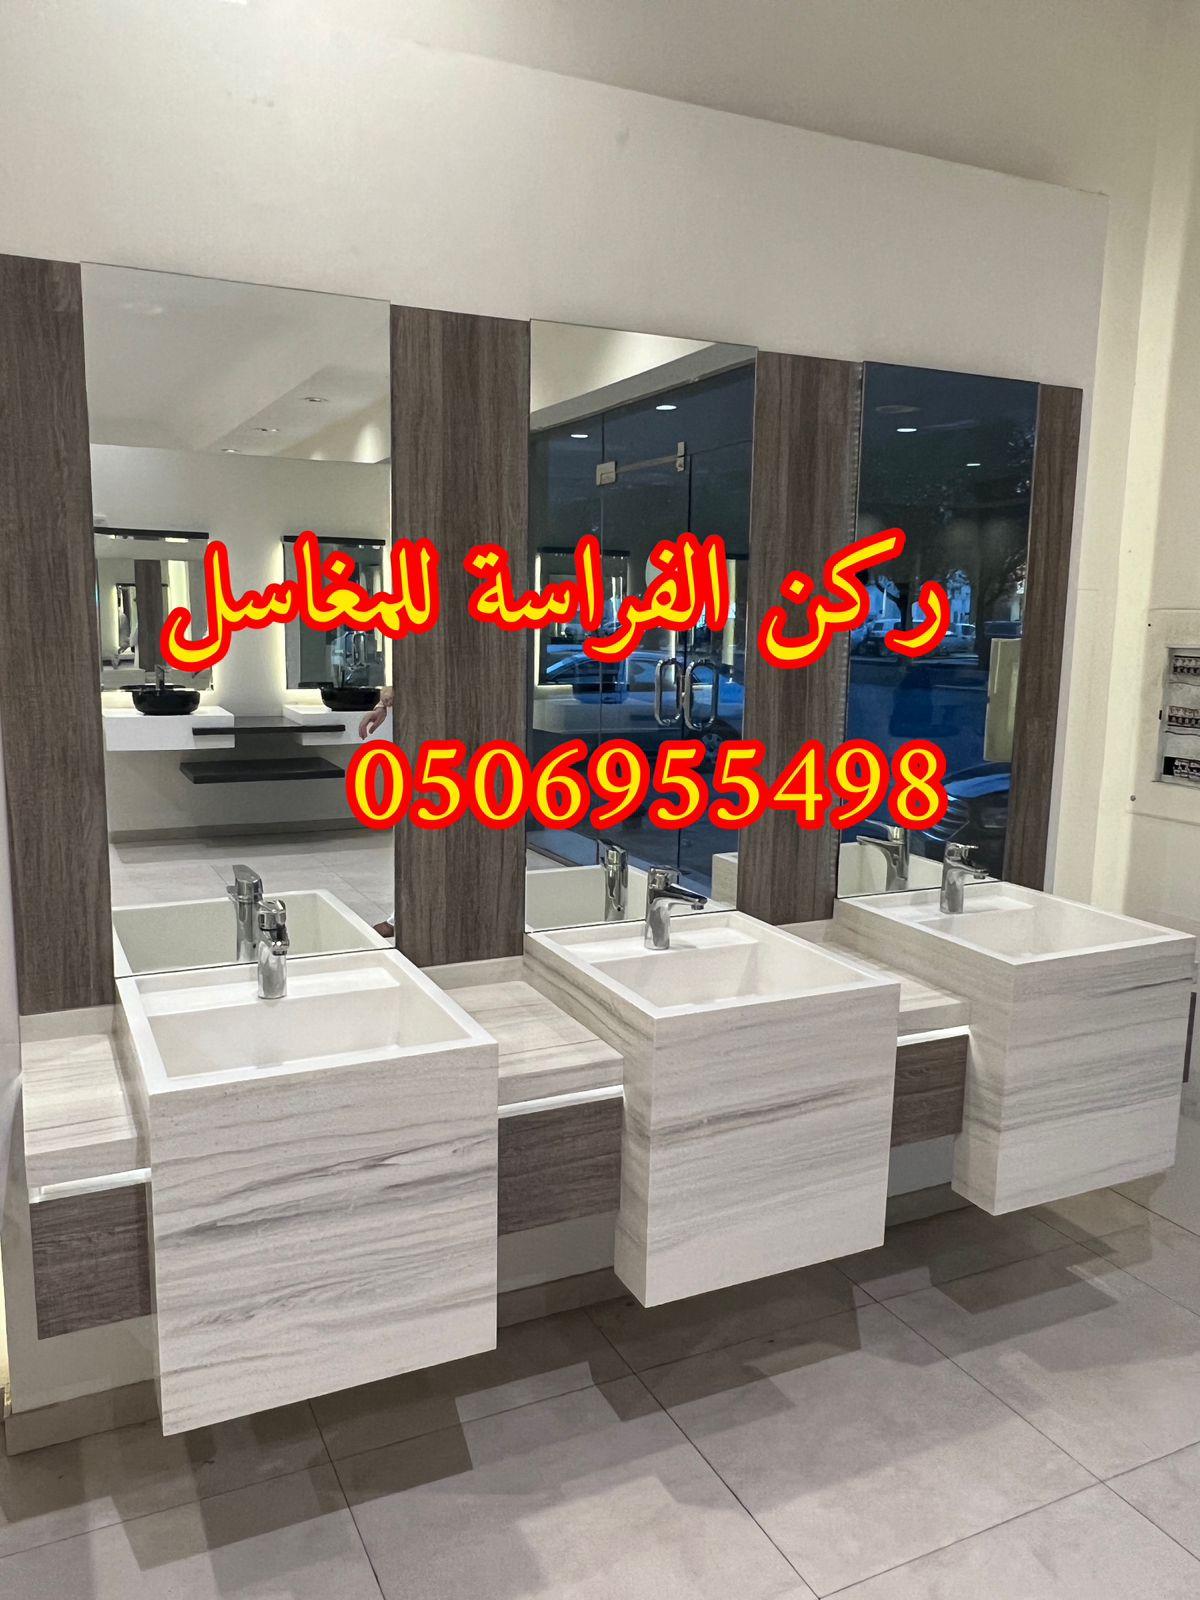 الرياض - مغاسل حمامات رخام مودرن فخمة في الرياض,0506955498 828704998